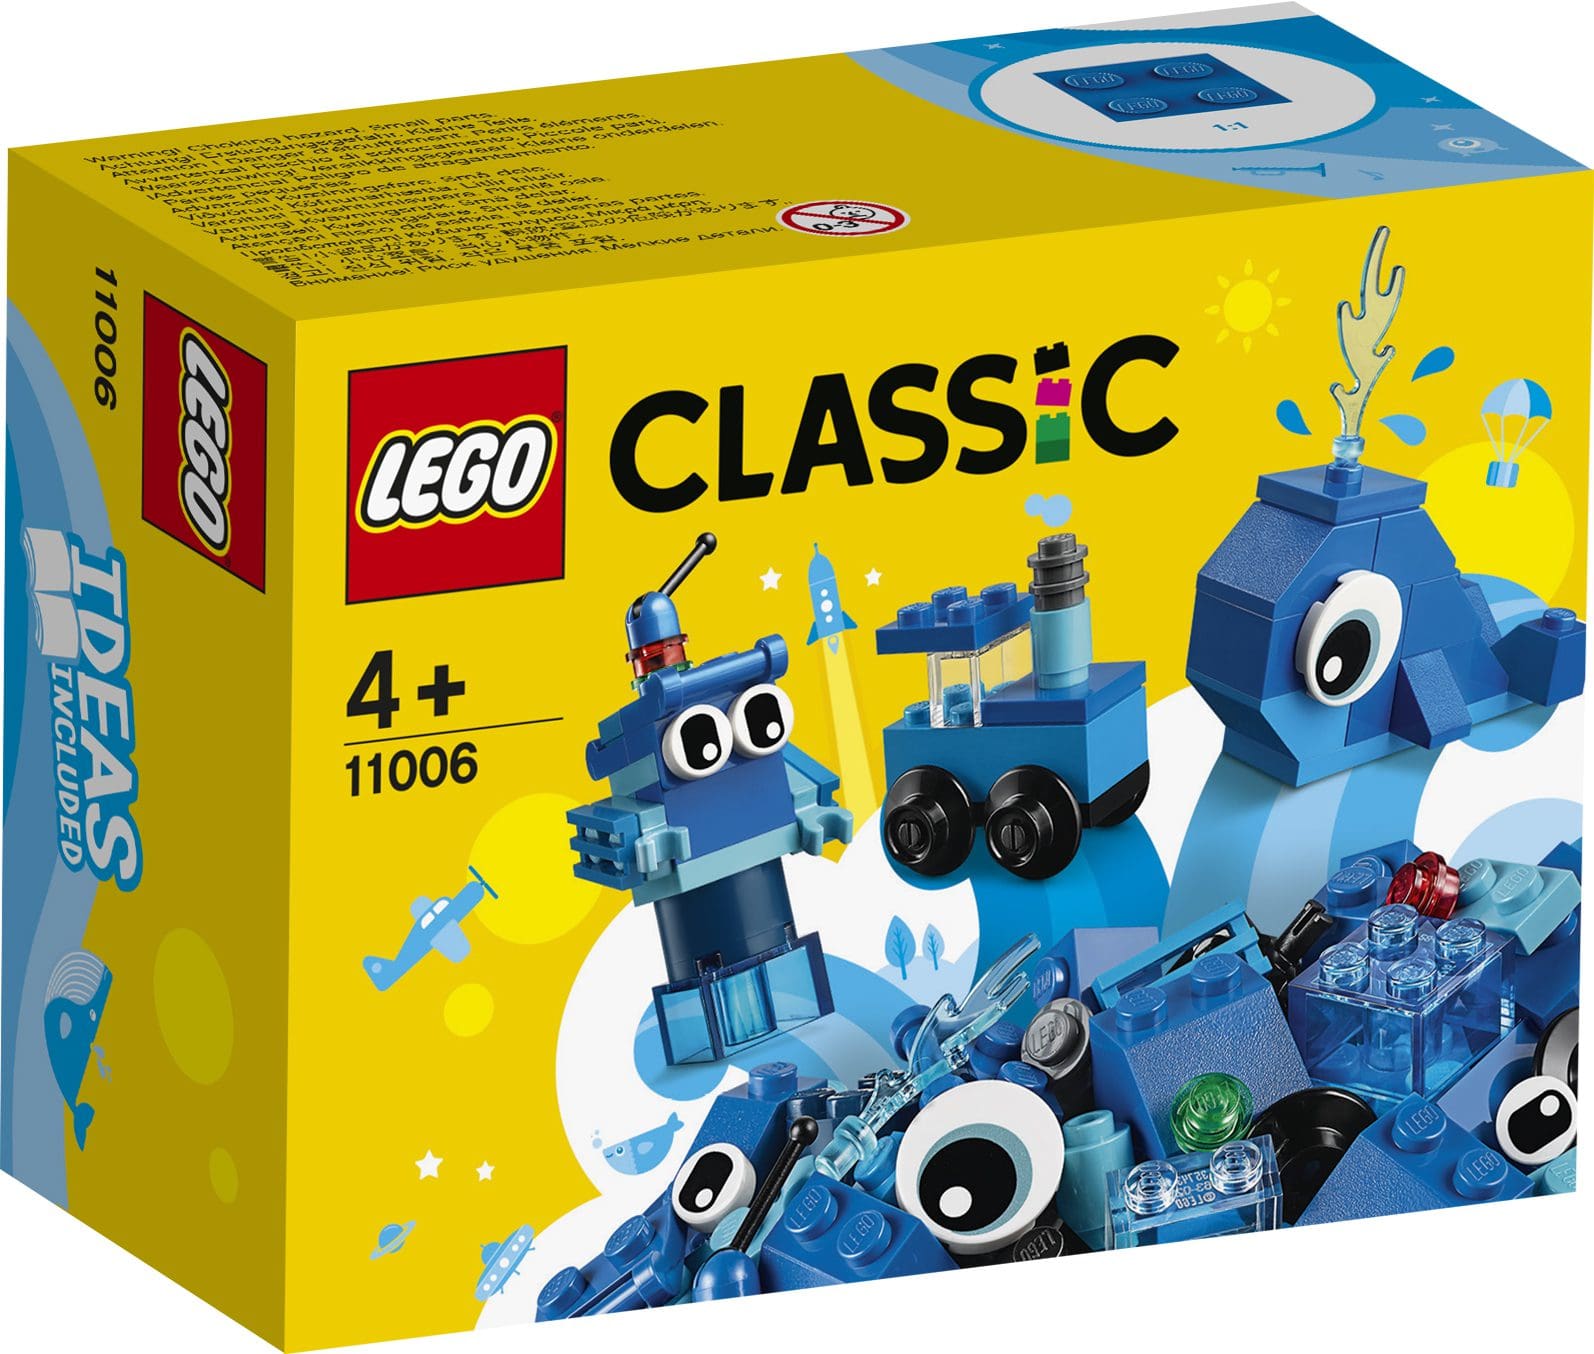 mild forbedre fumle Kreative Blå Lego Klodser | Legebiksen